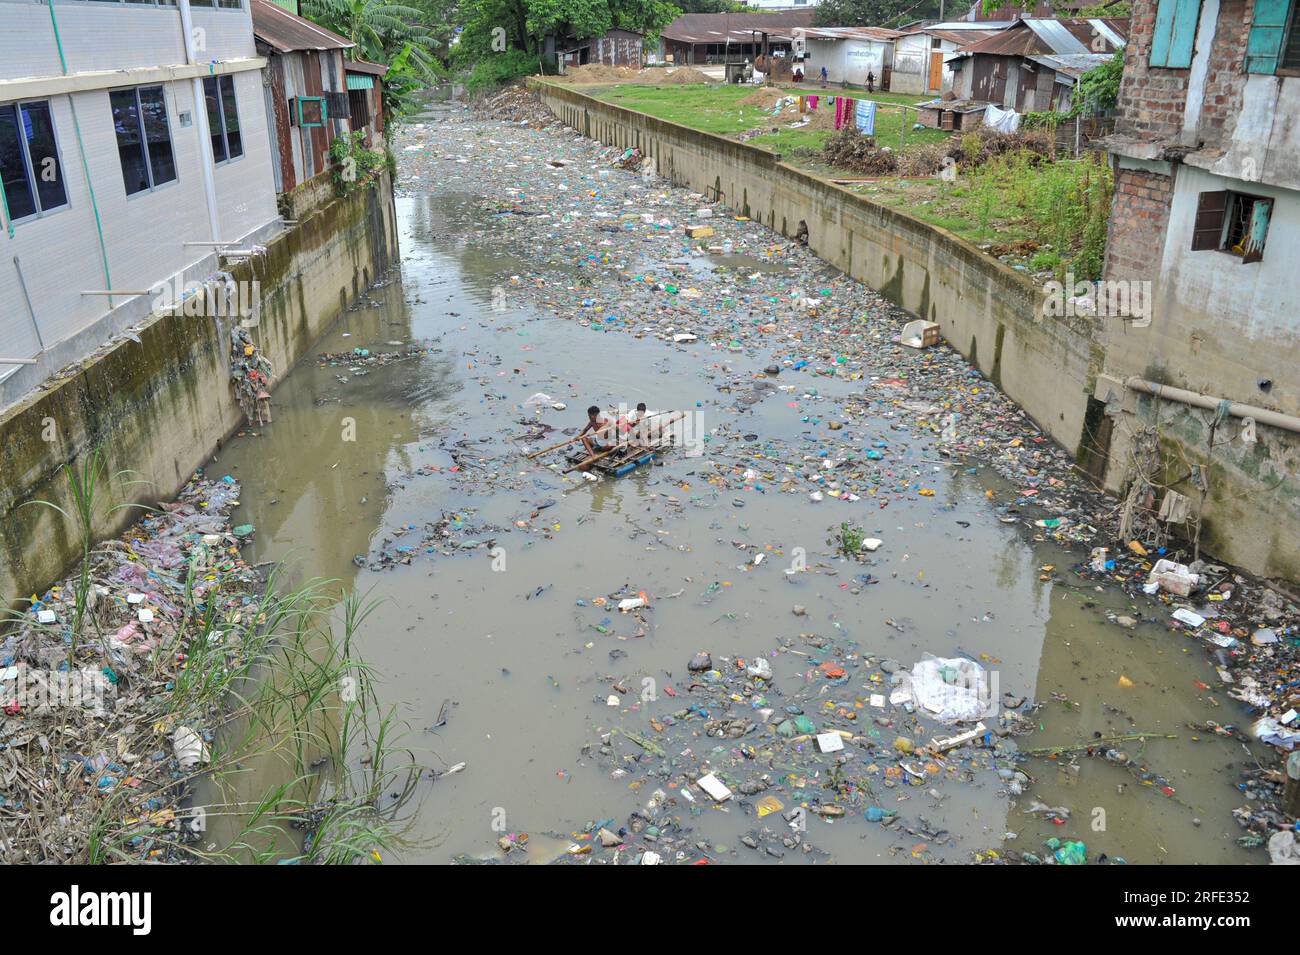 Ein Vater und Sohn rudern auf einem handgefertigten Floß und suchen nach Altkunststoff-Recyclingprodukten aus einem mit Kunststoffabfällen gefüllten Kanal im Kazir Bazar-Viertel von Sylhet. Dieser Kanal ist direkt mit dem Fluss Surma verbunden, der den Fluss Surma verschmutzt und das Flussbett füllt. Das Polyethylen hat sich in riesigen Haufen Schlamm angesammelt, was die Navigation behindert und zu einem Mangel an nutzbarem Wasser aus dem Surma-Fluss von Bangladesch führt. Sylhet, Bangladesch. Stockfoto